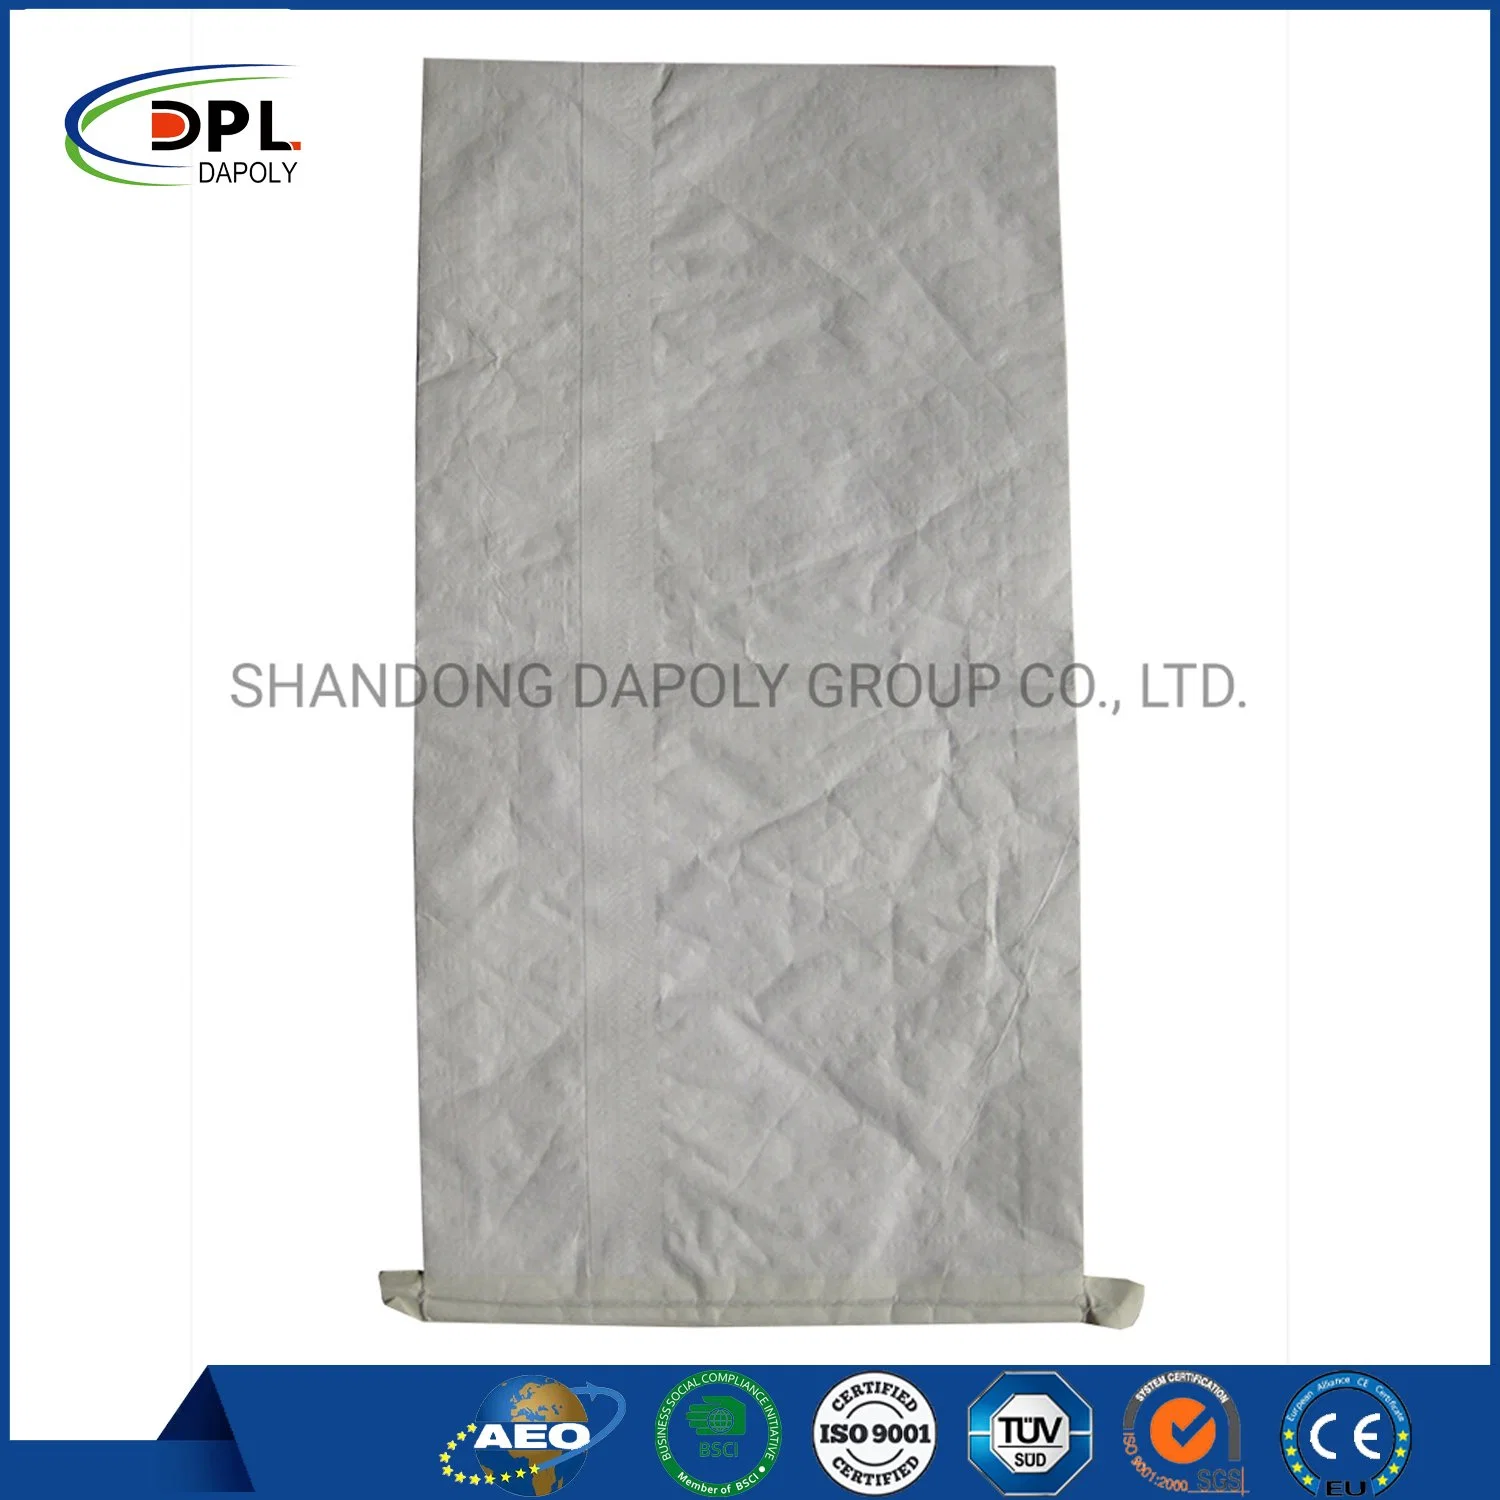 20kg 25kg 40kg 50kg Dry Mortar Cement Bag Multiwall Kraft Paper Tile Adhesive Valve Bag Plaster Mortar Putty Powder Paper Sack for Sale